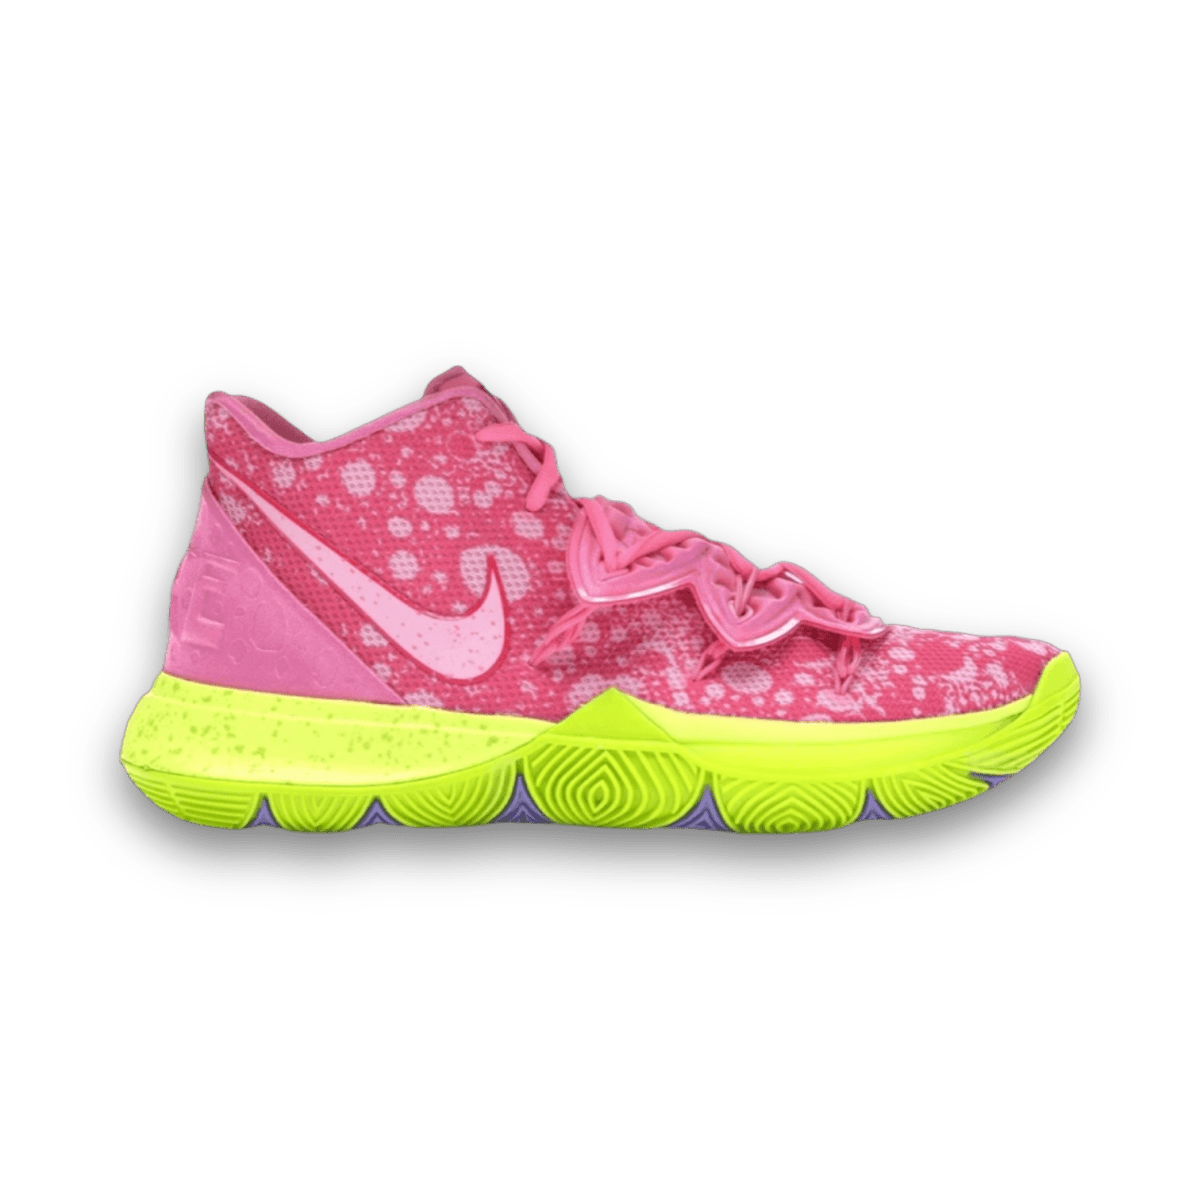 Kyrie 5 Spongebob Patrick - Mid Sneaker - Jawns on Fire Sneakers & Streetwear